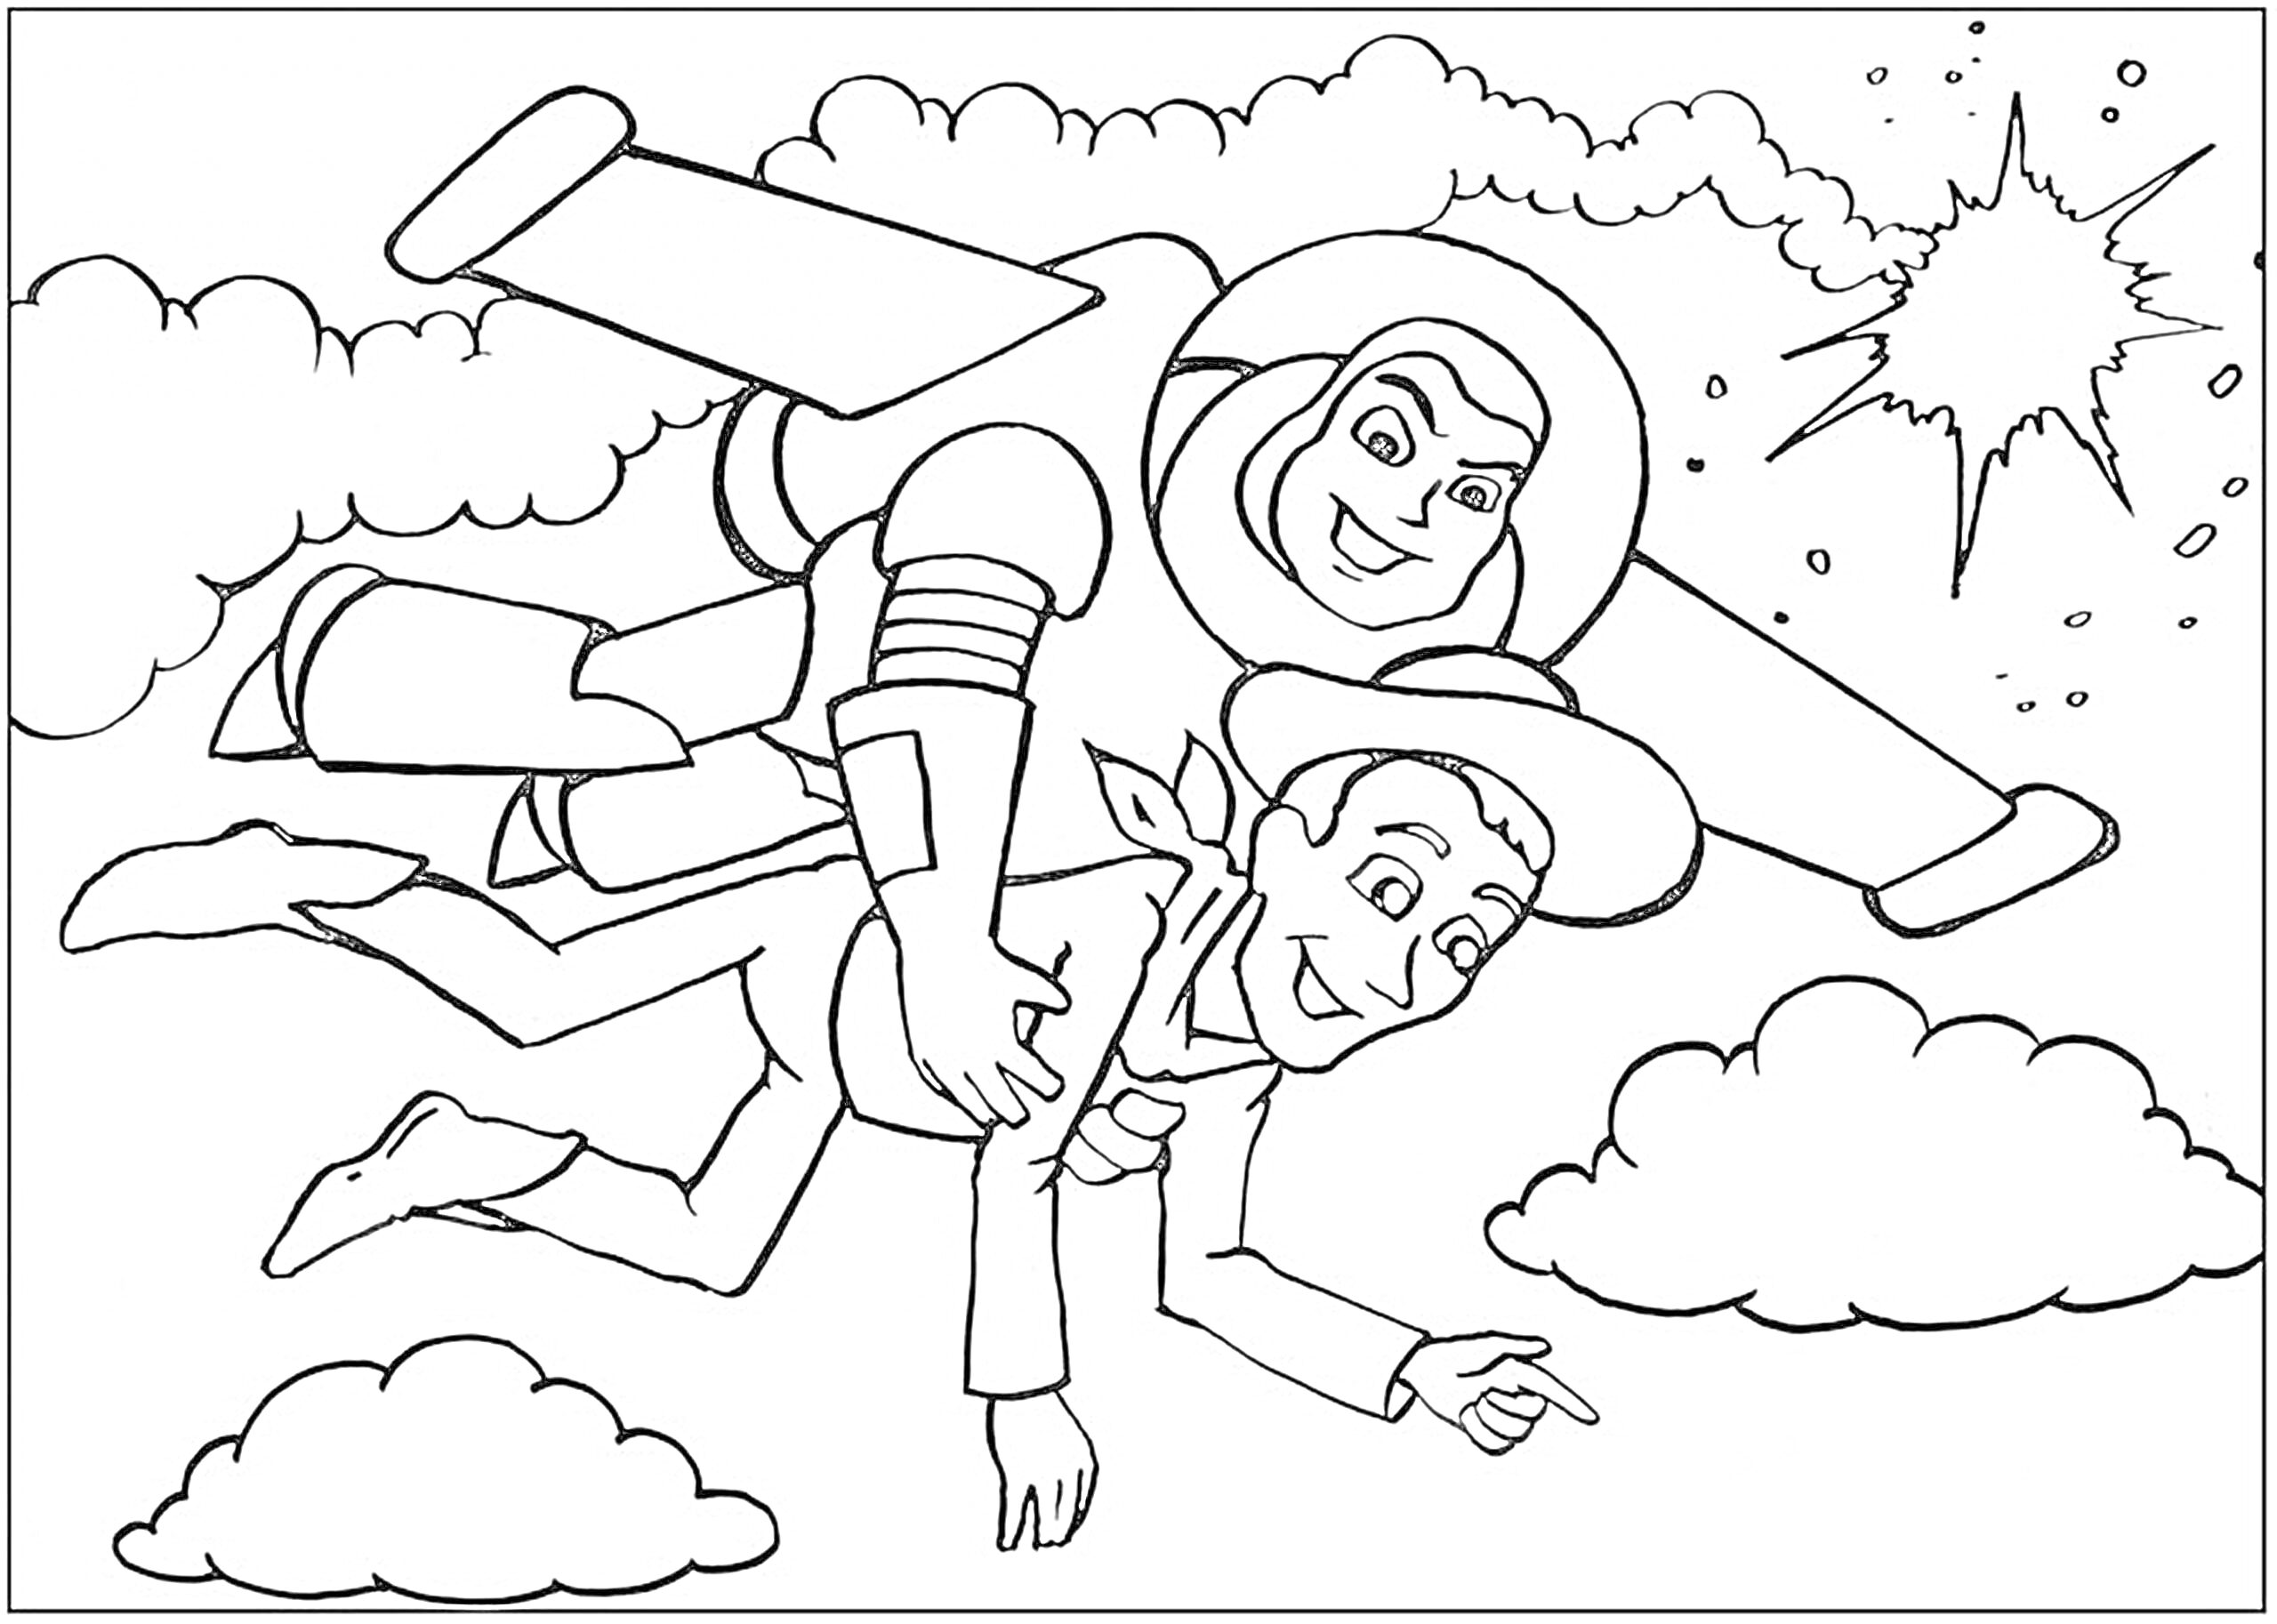 Летающий астронавт и ковбой среди облаков